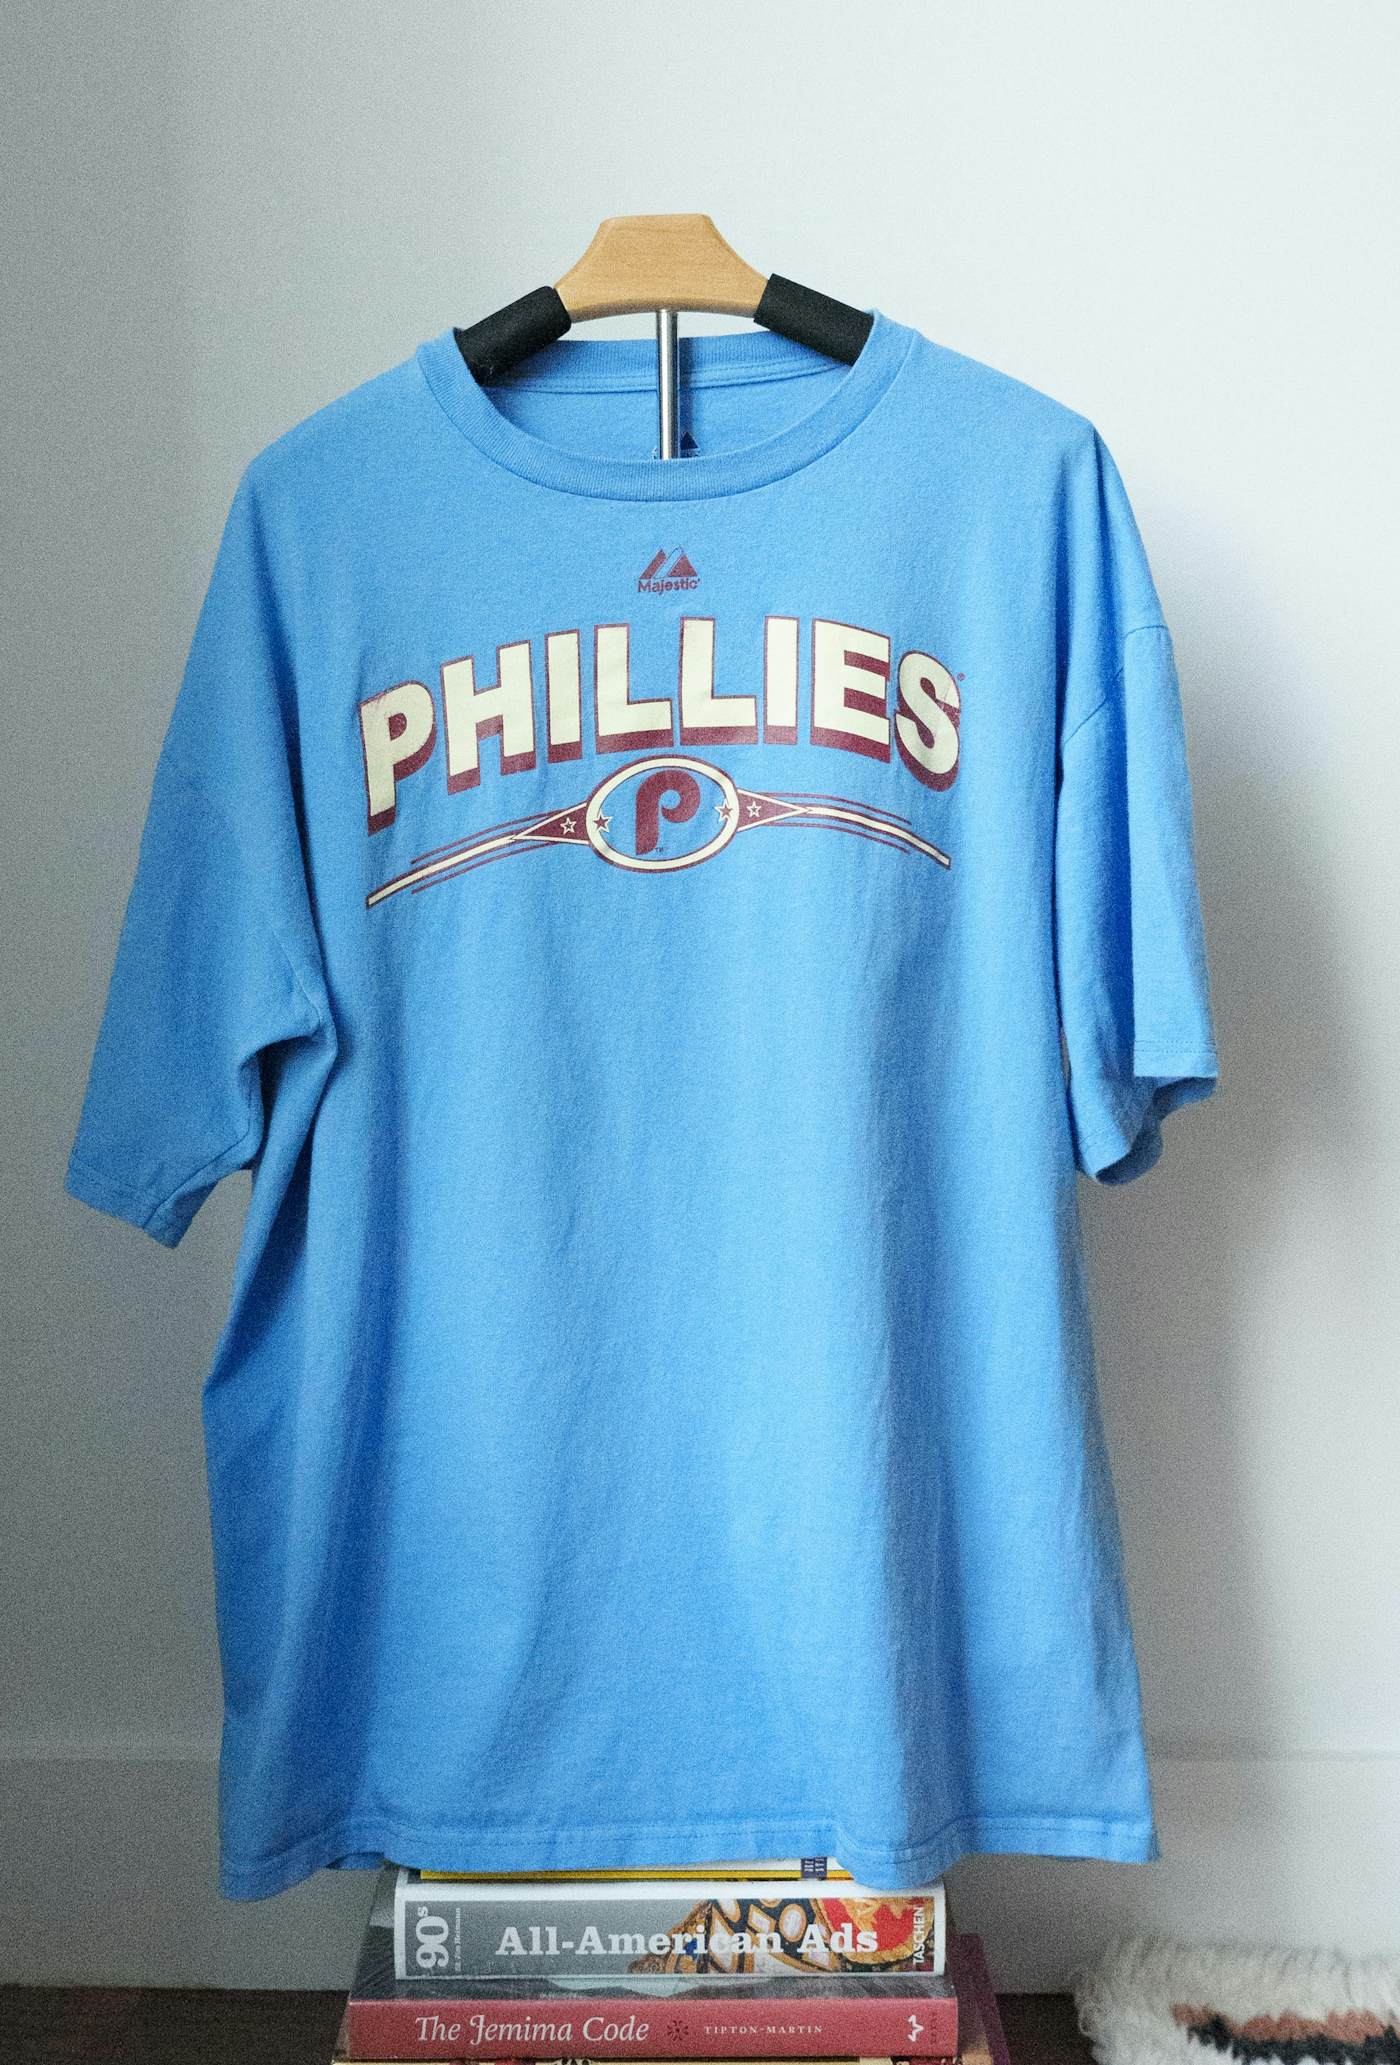 phillies t shirt blue